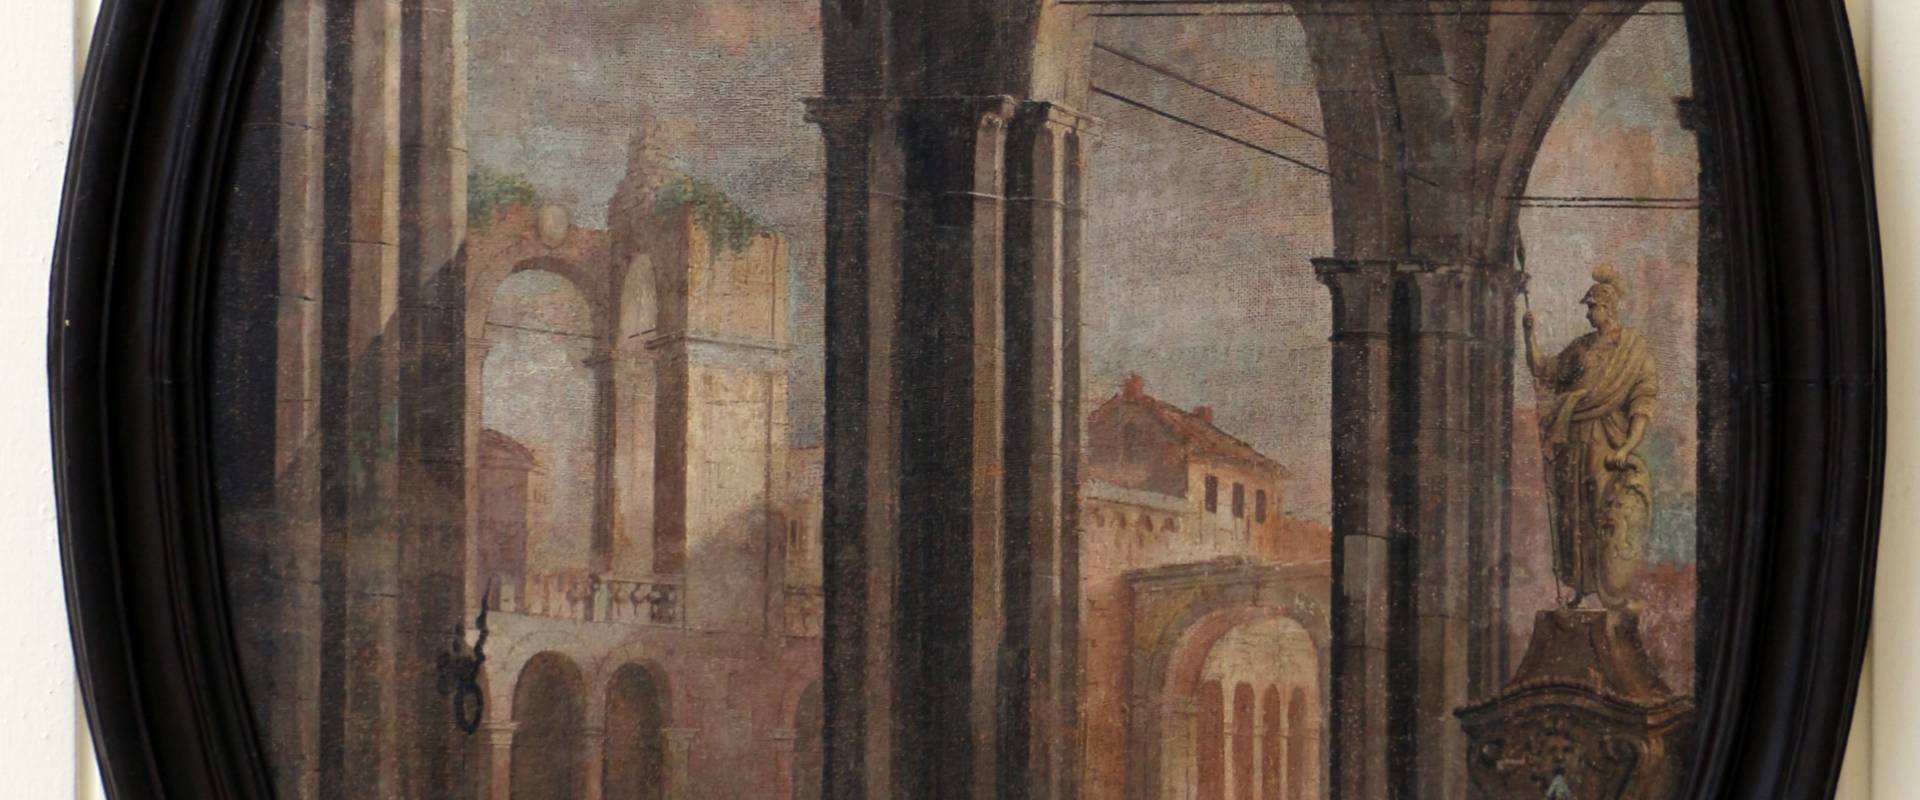 Pittore emiliano, prospettiva con porticato gorico, fontana e veduta di rovine, 1750-1790 ca photo by Sailko